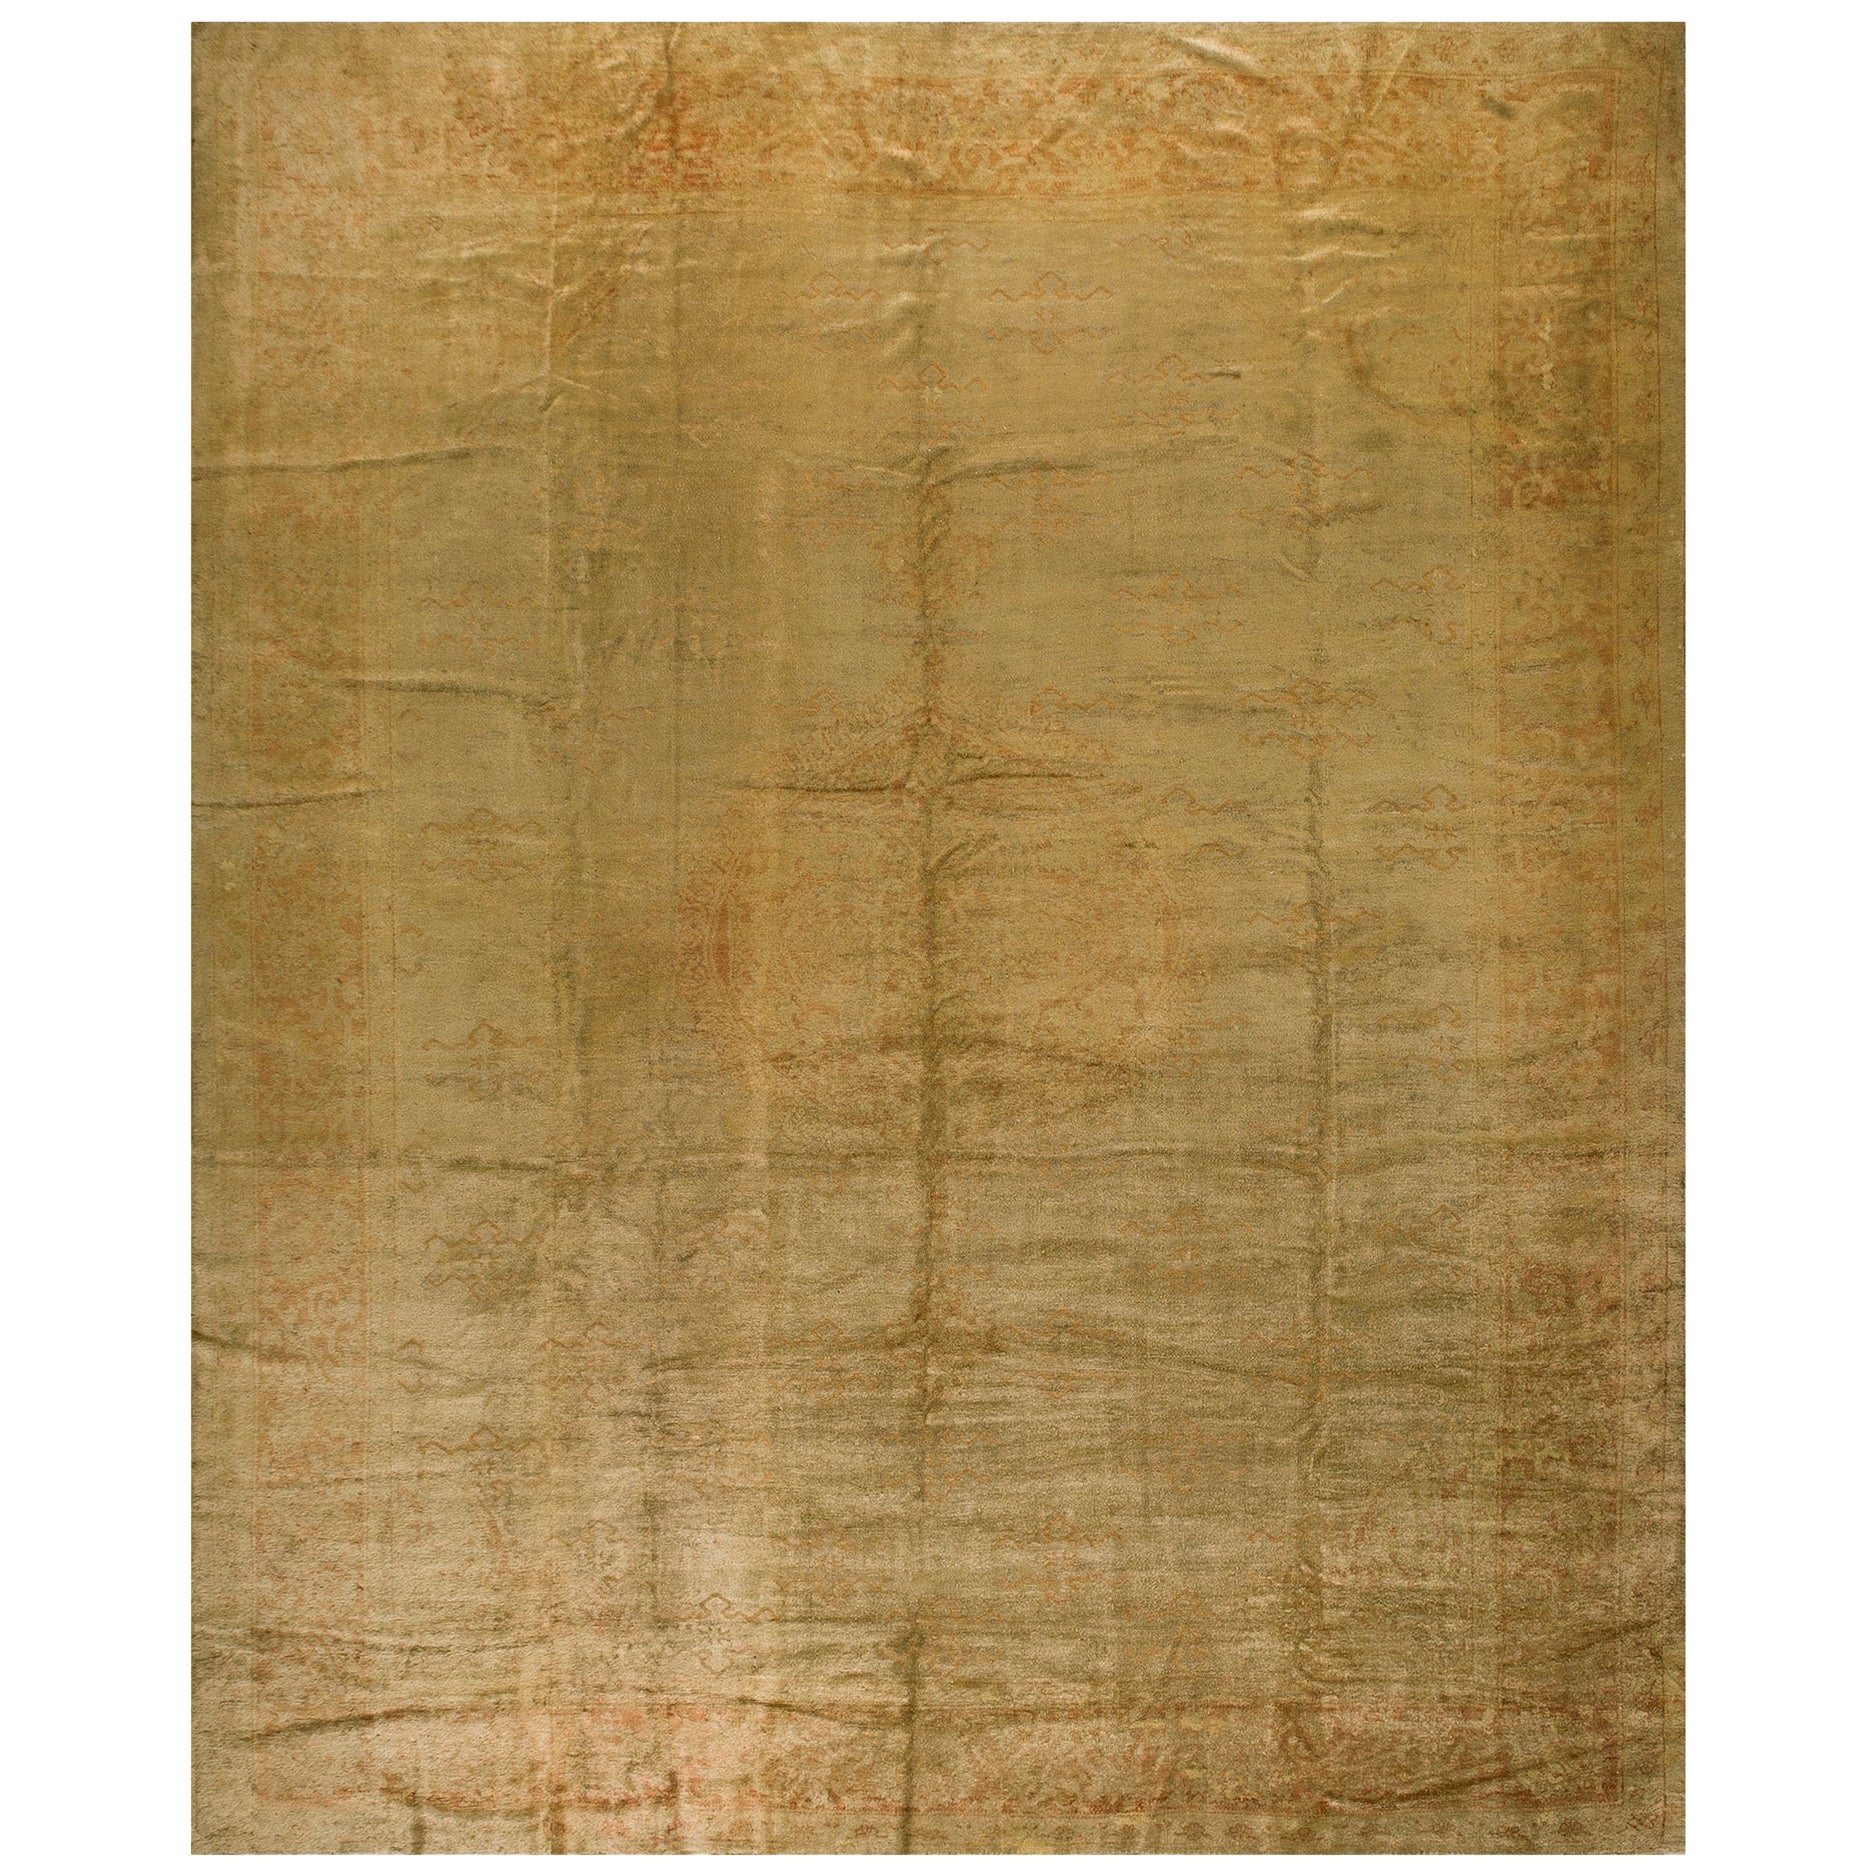 Türkischer Oushak-Teppich des frühen 20. Jahrhunderts ( 11' x 14'6"" - 225 x 442 cm) 